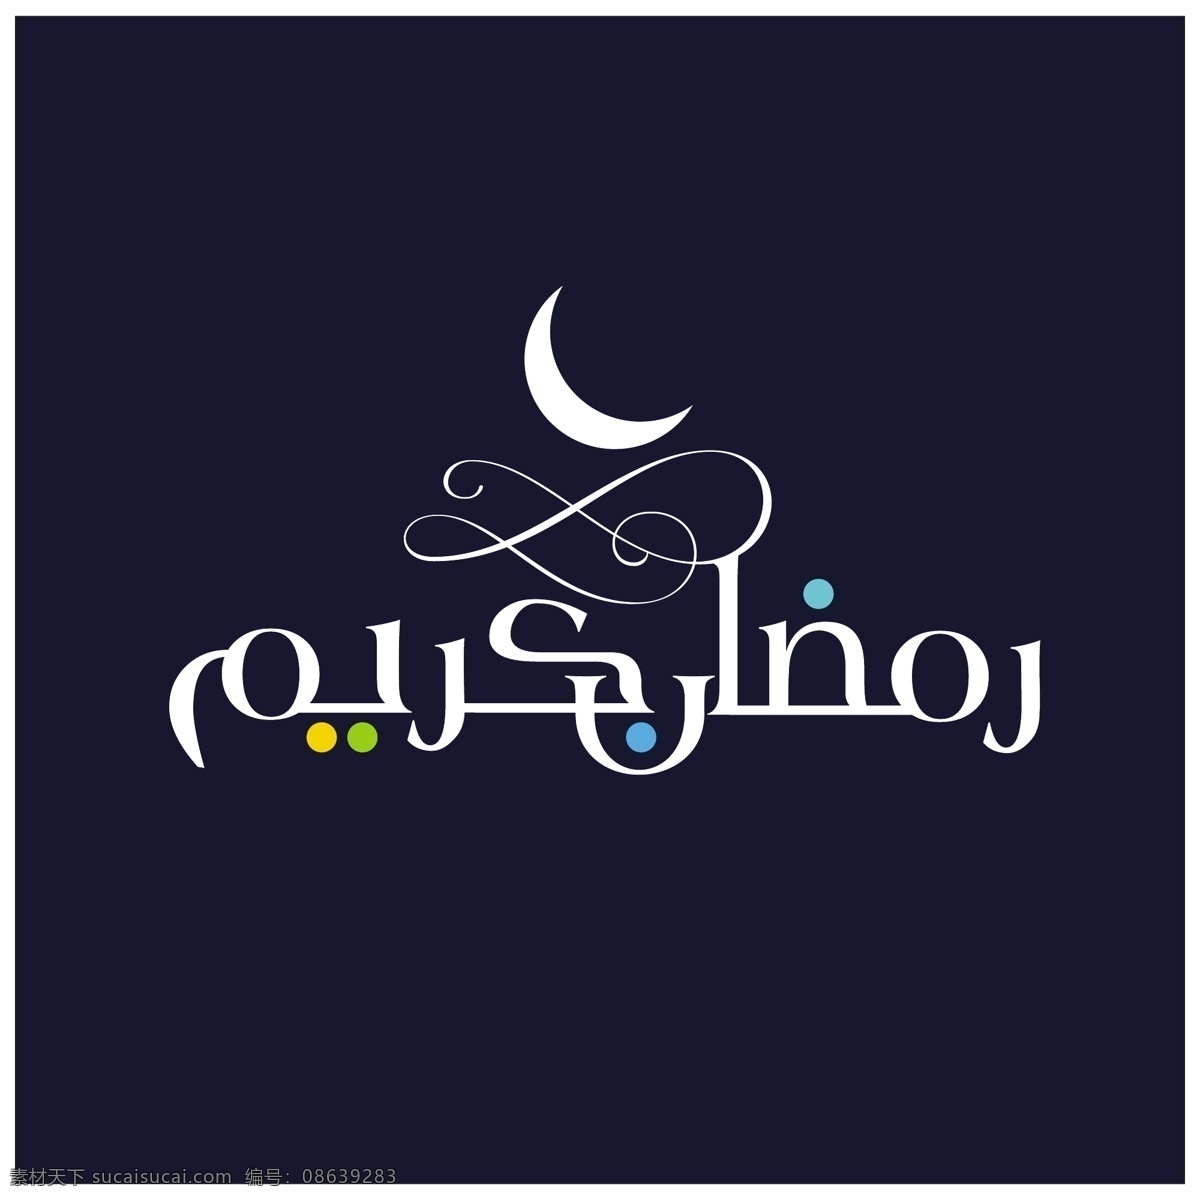 卡里 姆 阿拉伯语 书法 星星 月亮 斋月 开斋节 清真寺 庆典 宗教 伊斯兰文化 穆斯林 庆祝 卡里姆 传统 文化 阿拉伯 白色